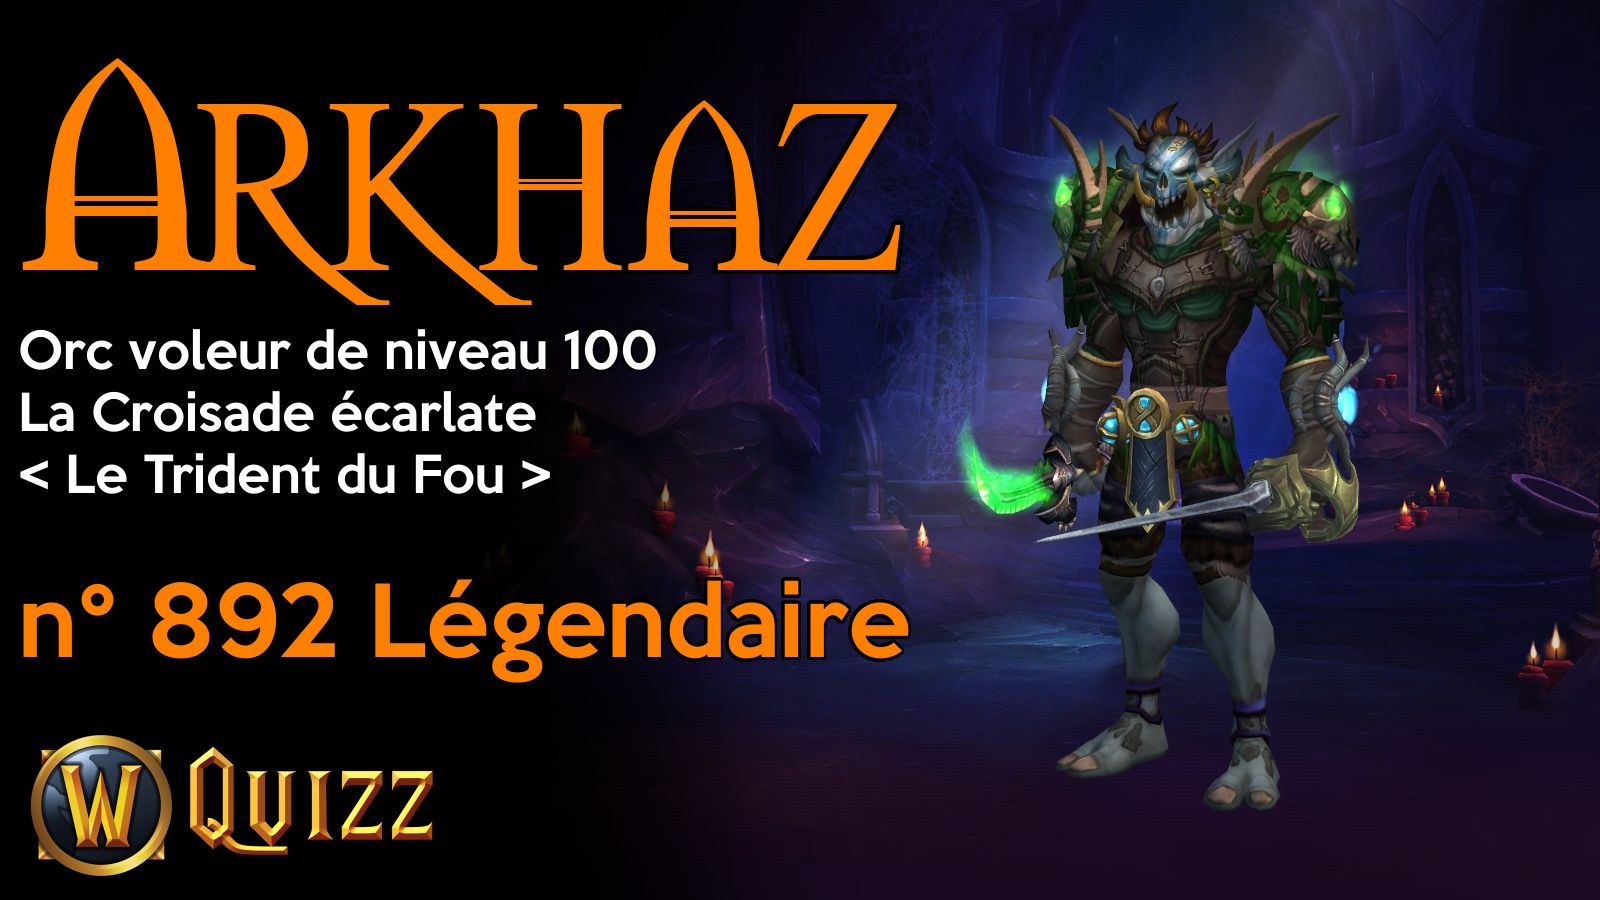 Arkhaz, Orc voleur de niveau 100, La Croisade écarlate